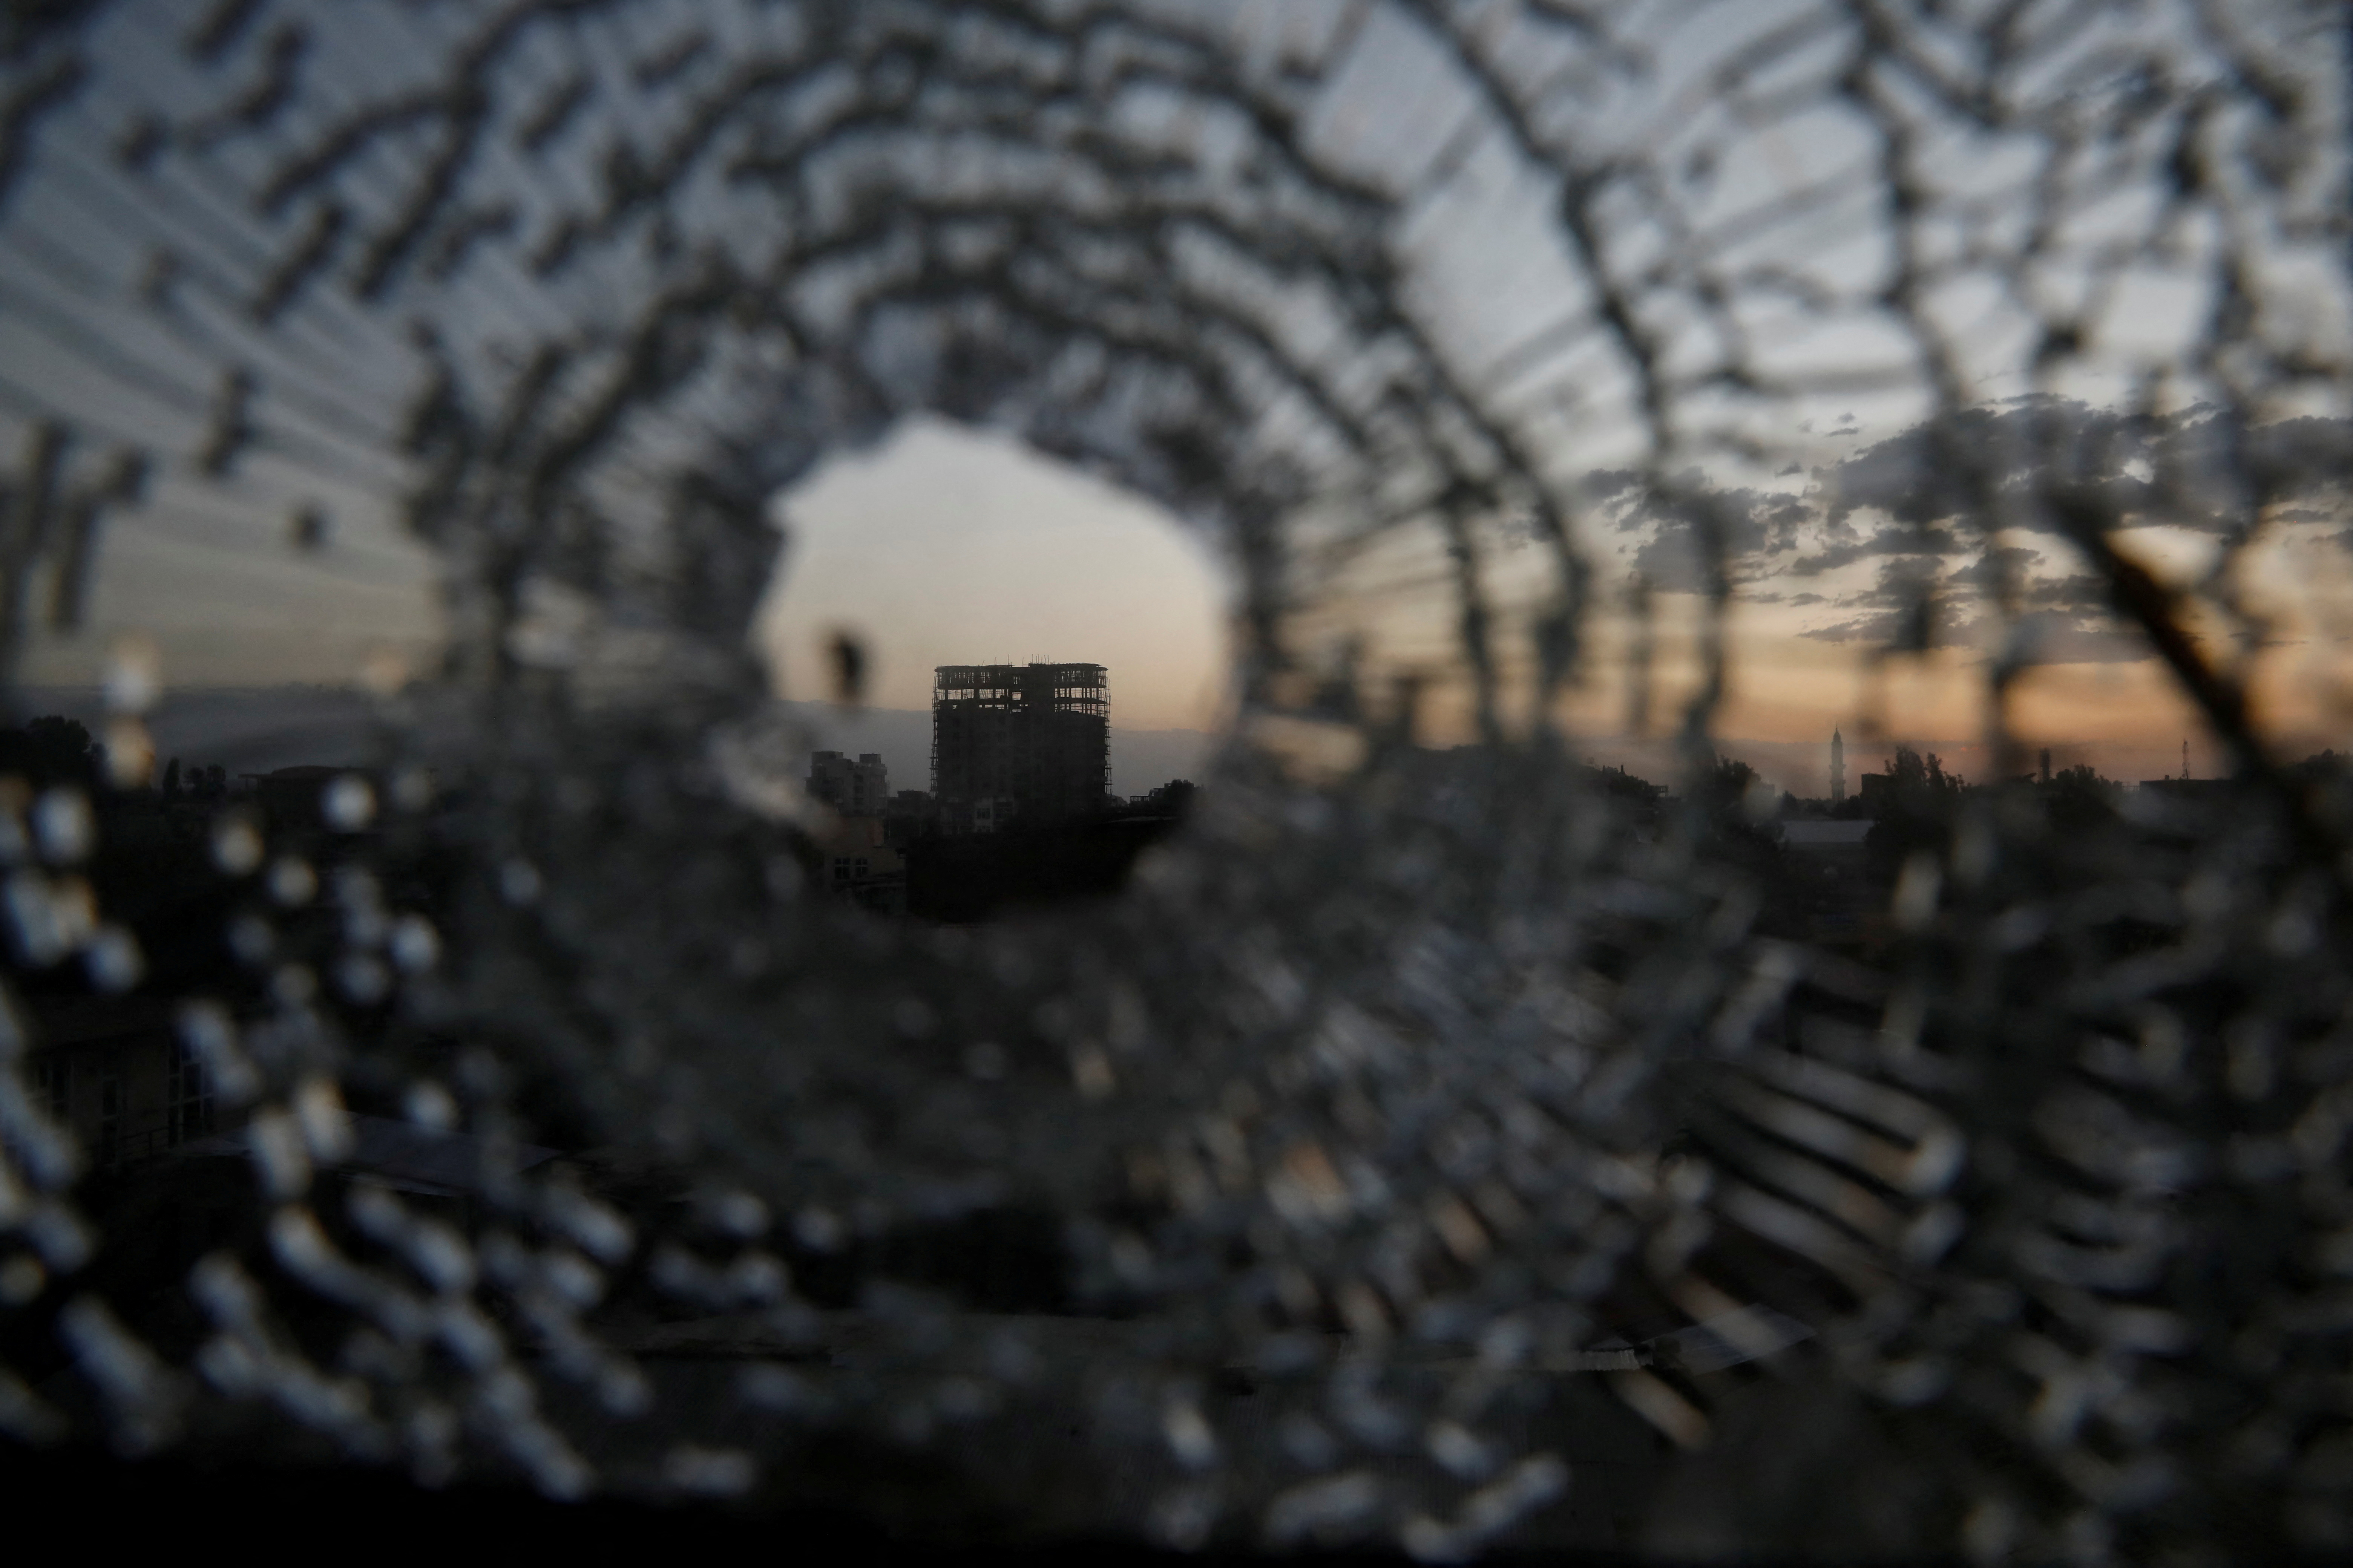 شوهد المبنى من خلال ثقب رصاصة في نافذة فندق أفريقيا في بلدة شاير ، منطقة تيغراي